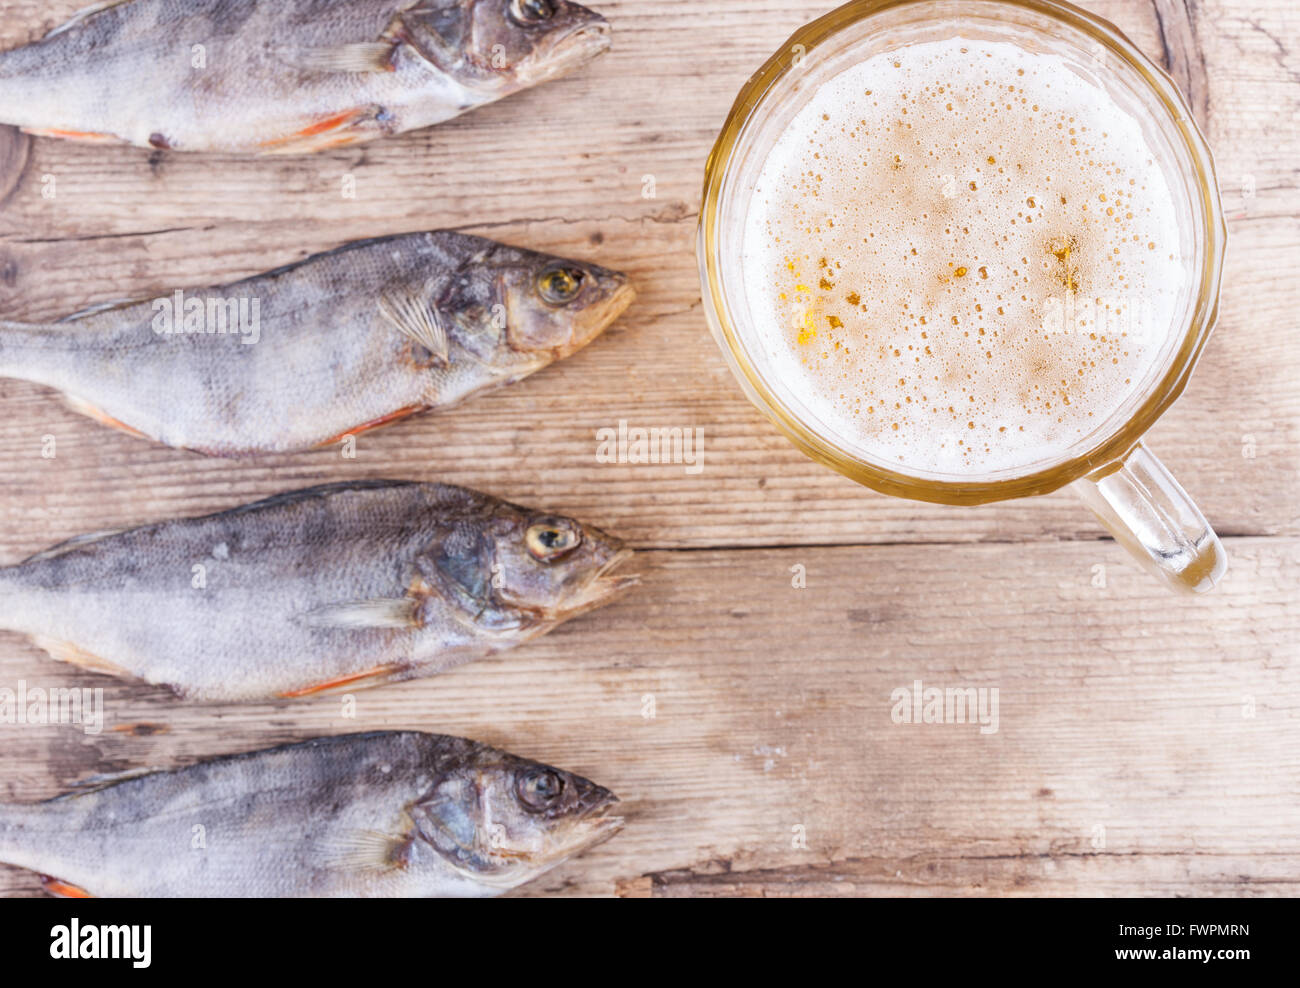 La birra e il pesce sulla parte superiore della tavola consente di visualizzare lo sfondo Foto Stock